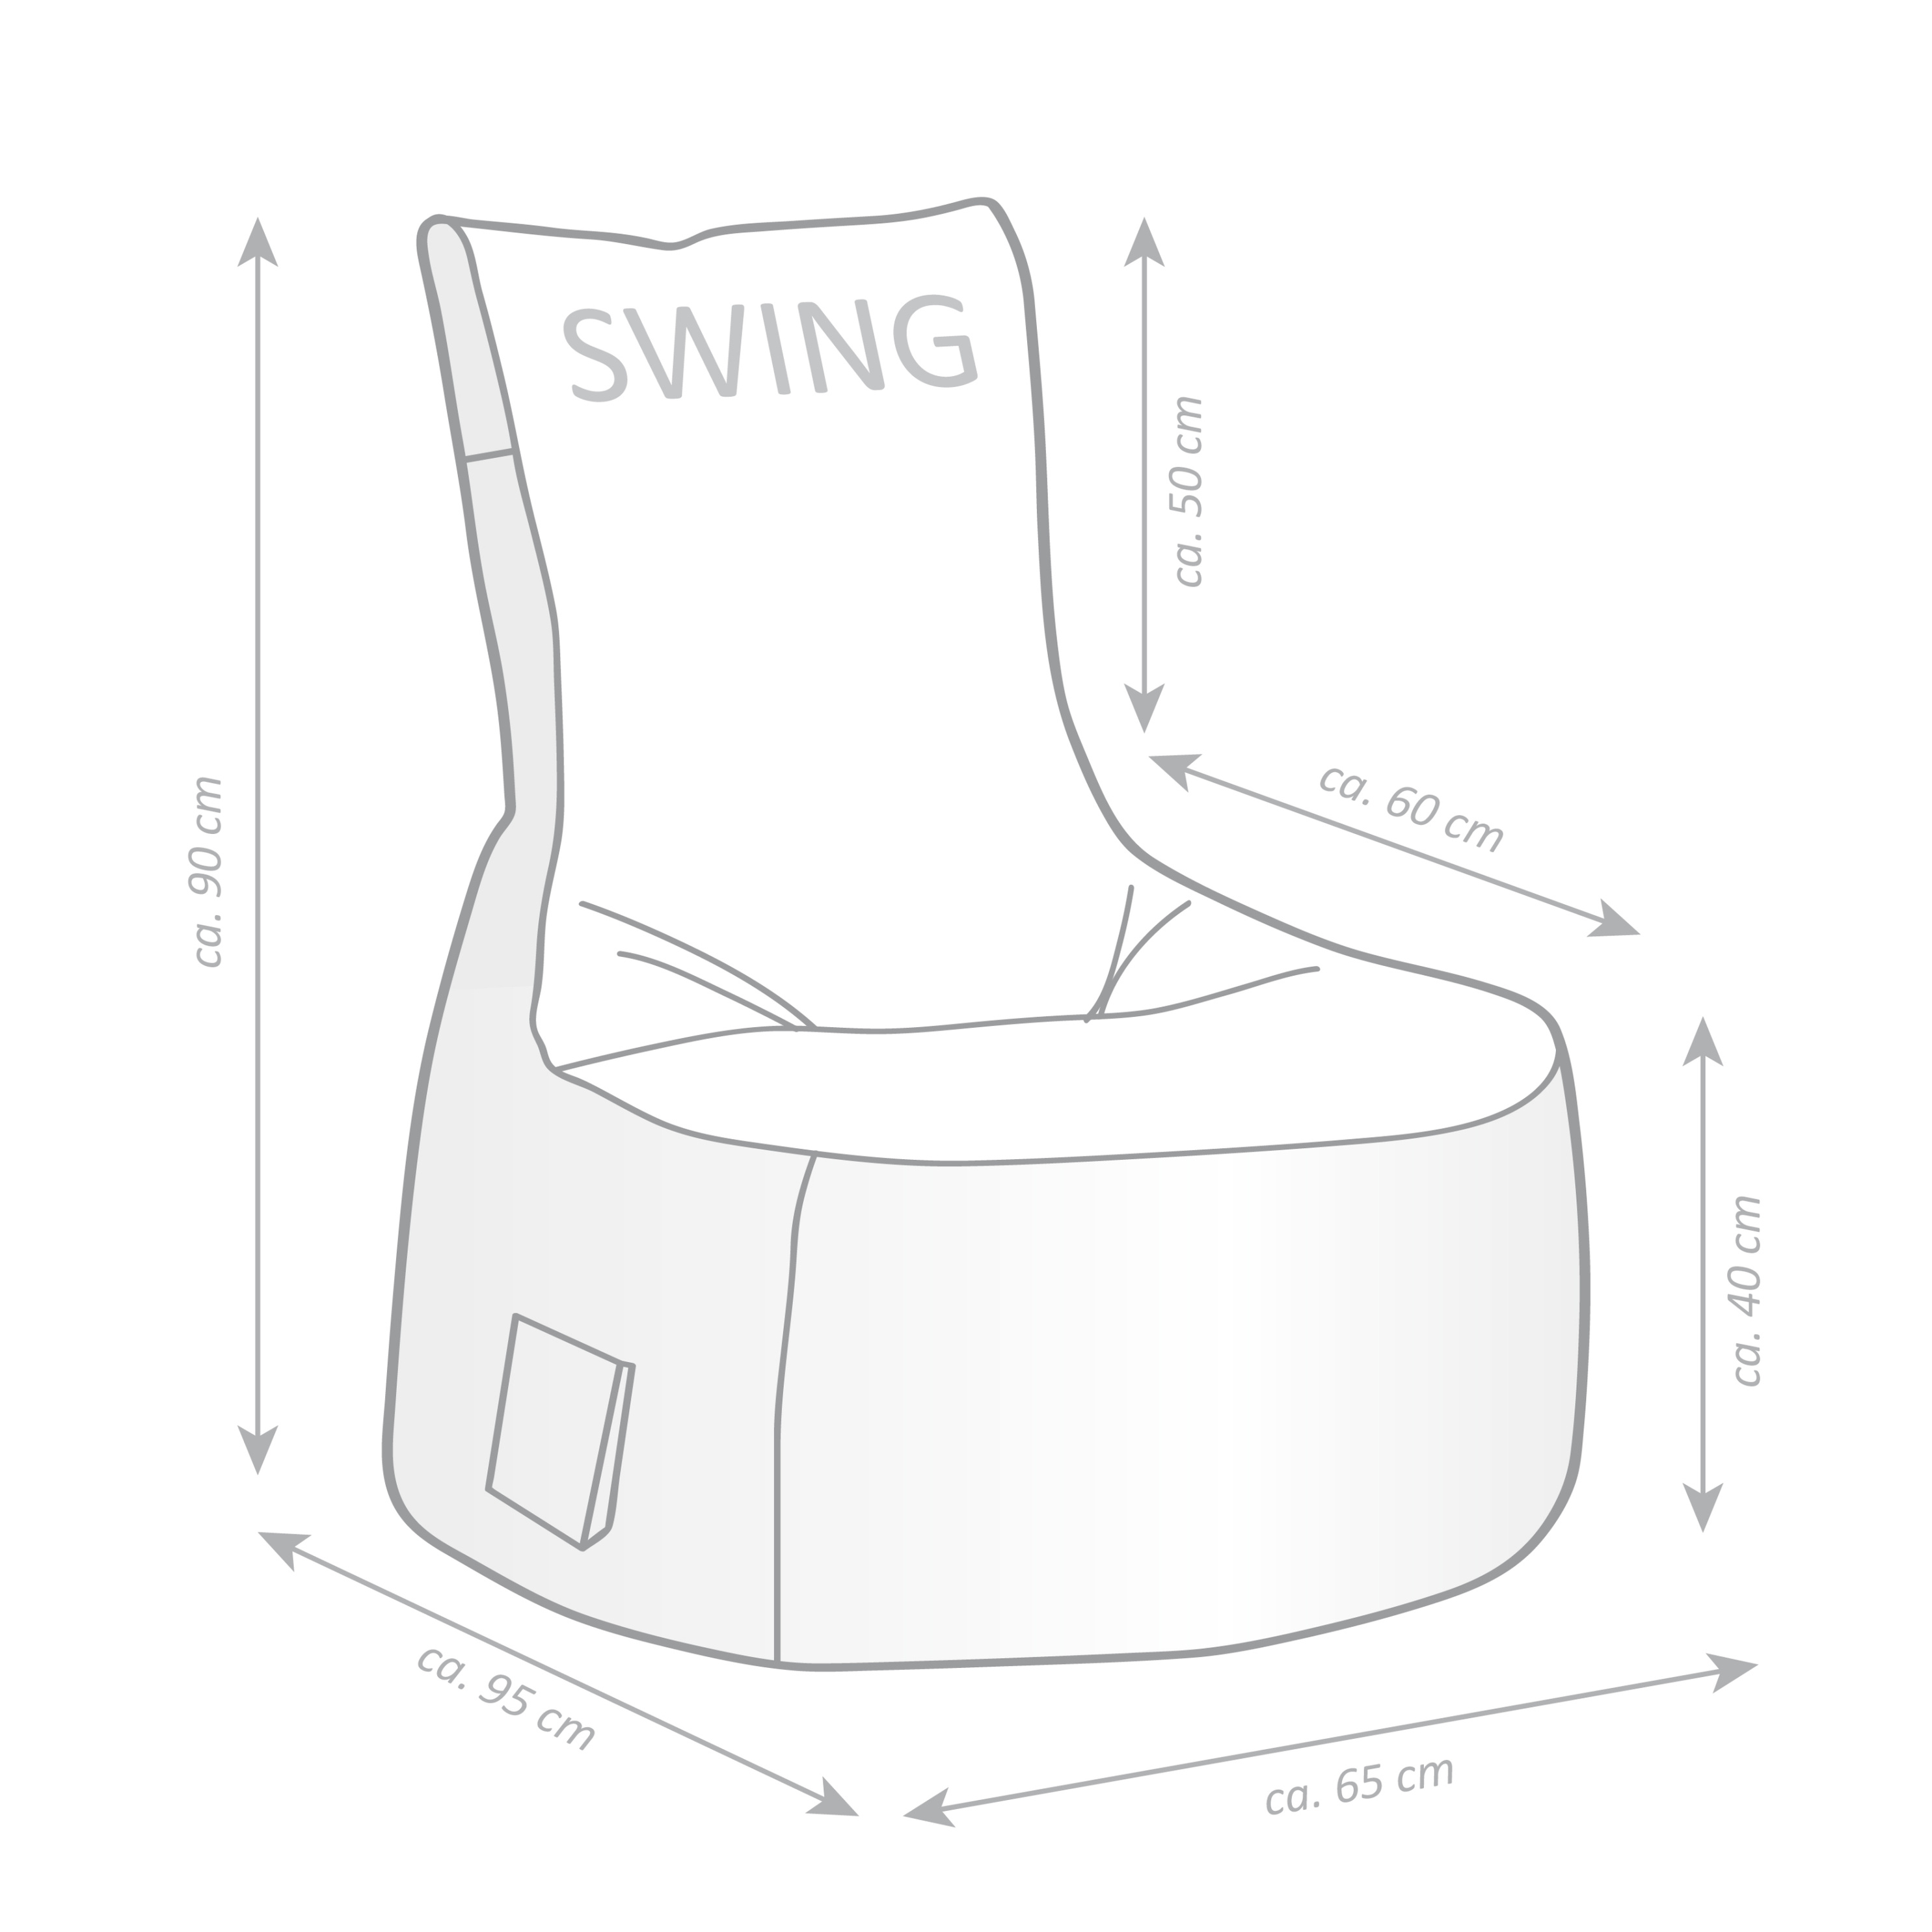 Sitzsack Swing SCUBA Farbe: khaki jetzt bei Weltbild.de bestellen